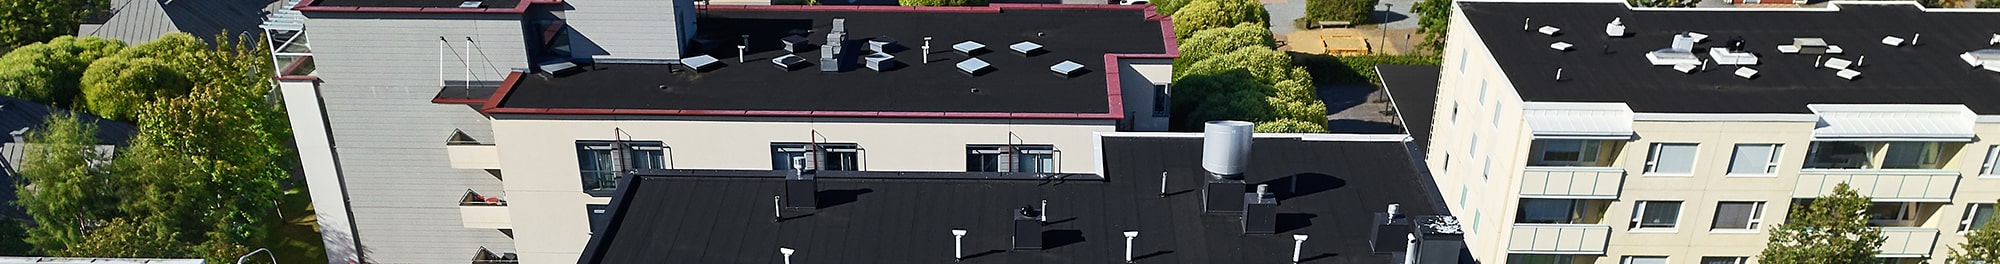 Commercial roofing contractors in Muskego & New Berlin